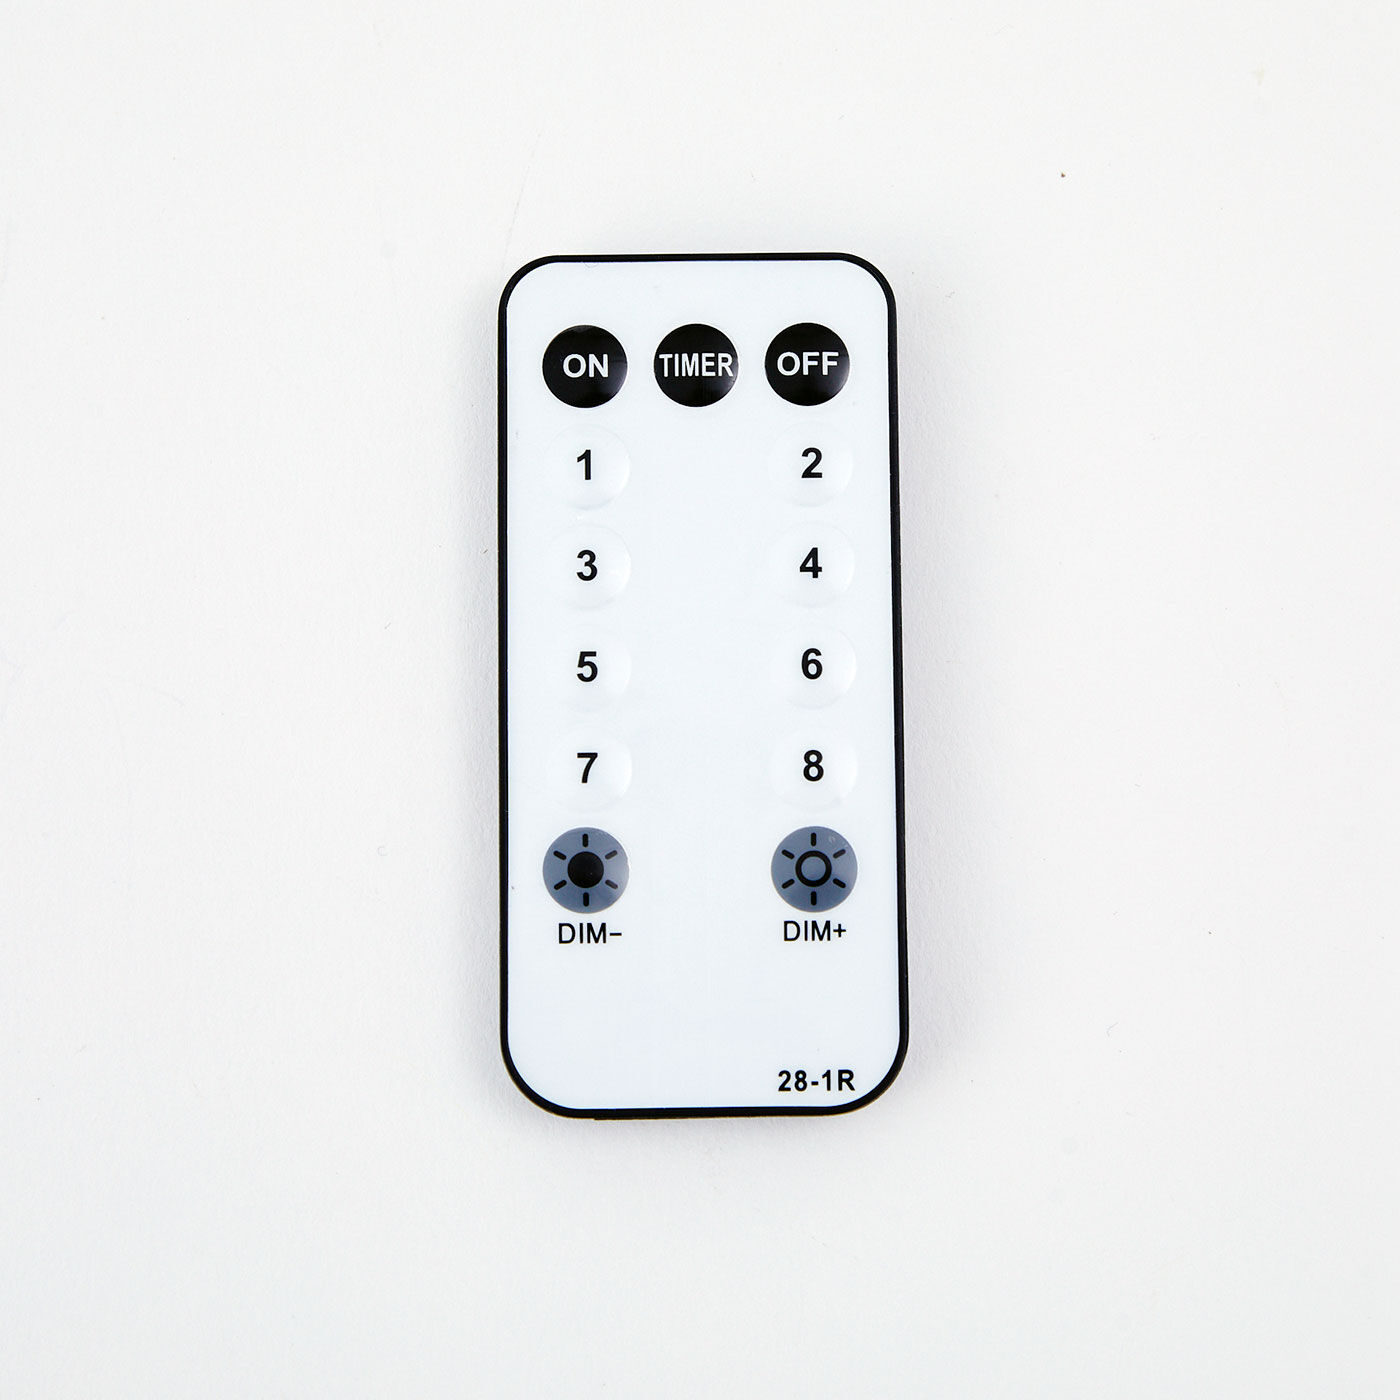 SeeMONO|お部屋を光でデコレーション　吊るして飾るワイヤーワークのＬＥＤライト〈ＳＴＡＲ〉|吊り下げても点灯や消灯の操作可能なリモコン付き。